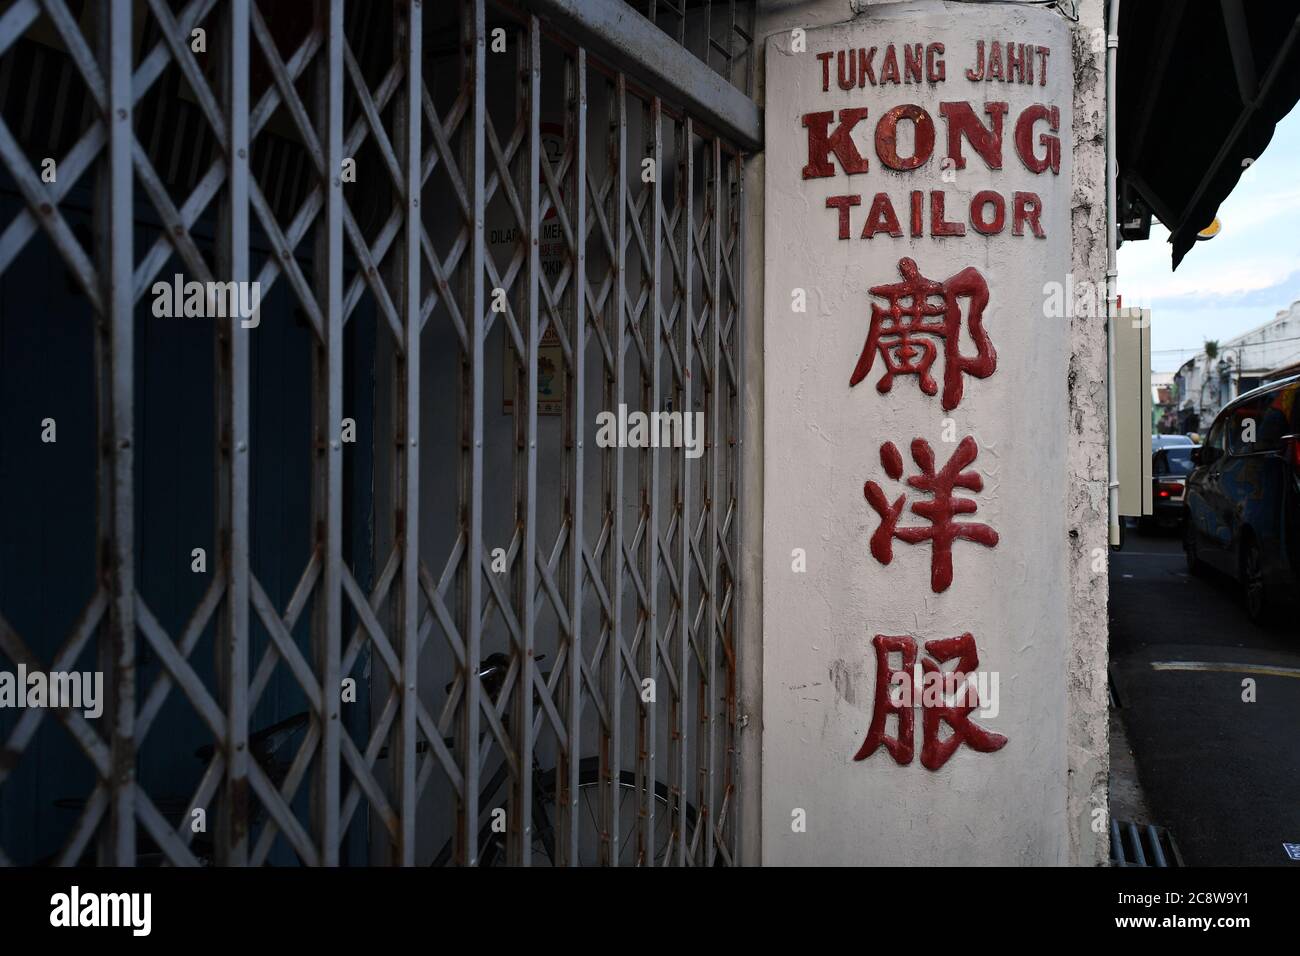 Una antigua tienda de sastre con escritura China y occidental está cerrada por el día en Malacca Malasia Foto de stock